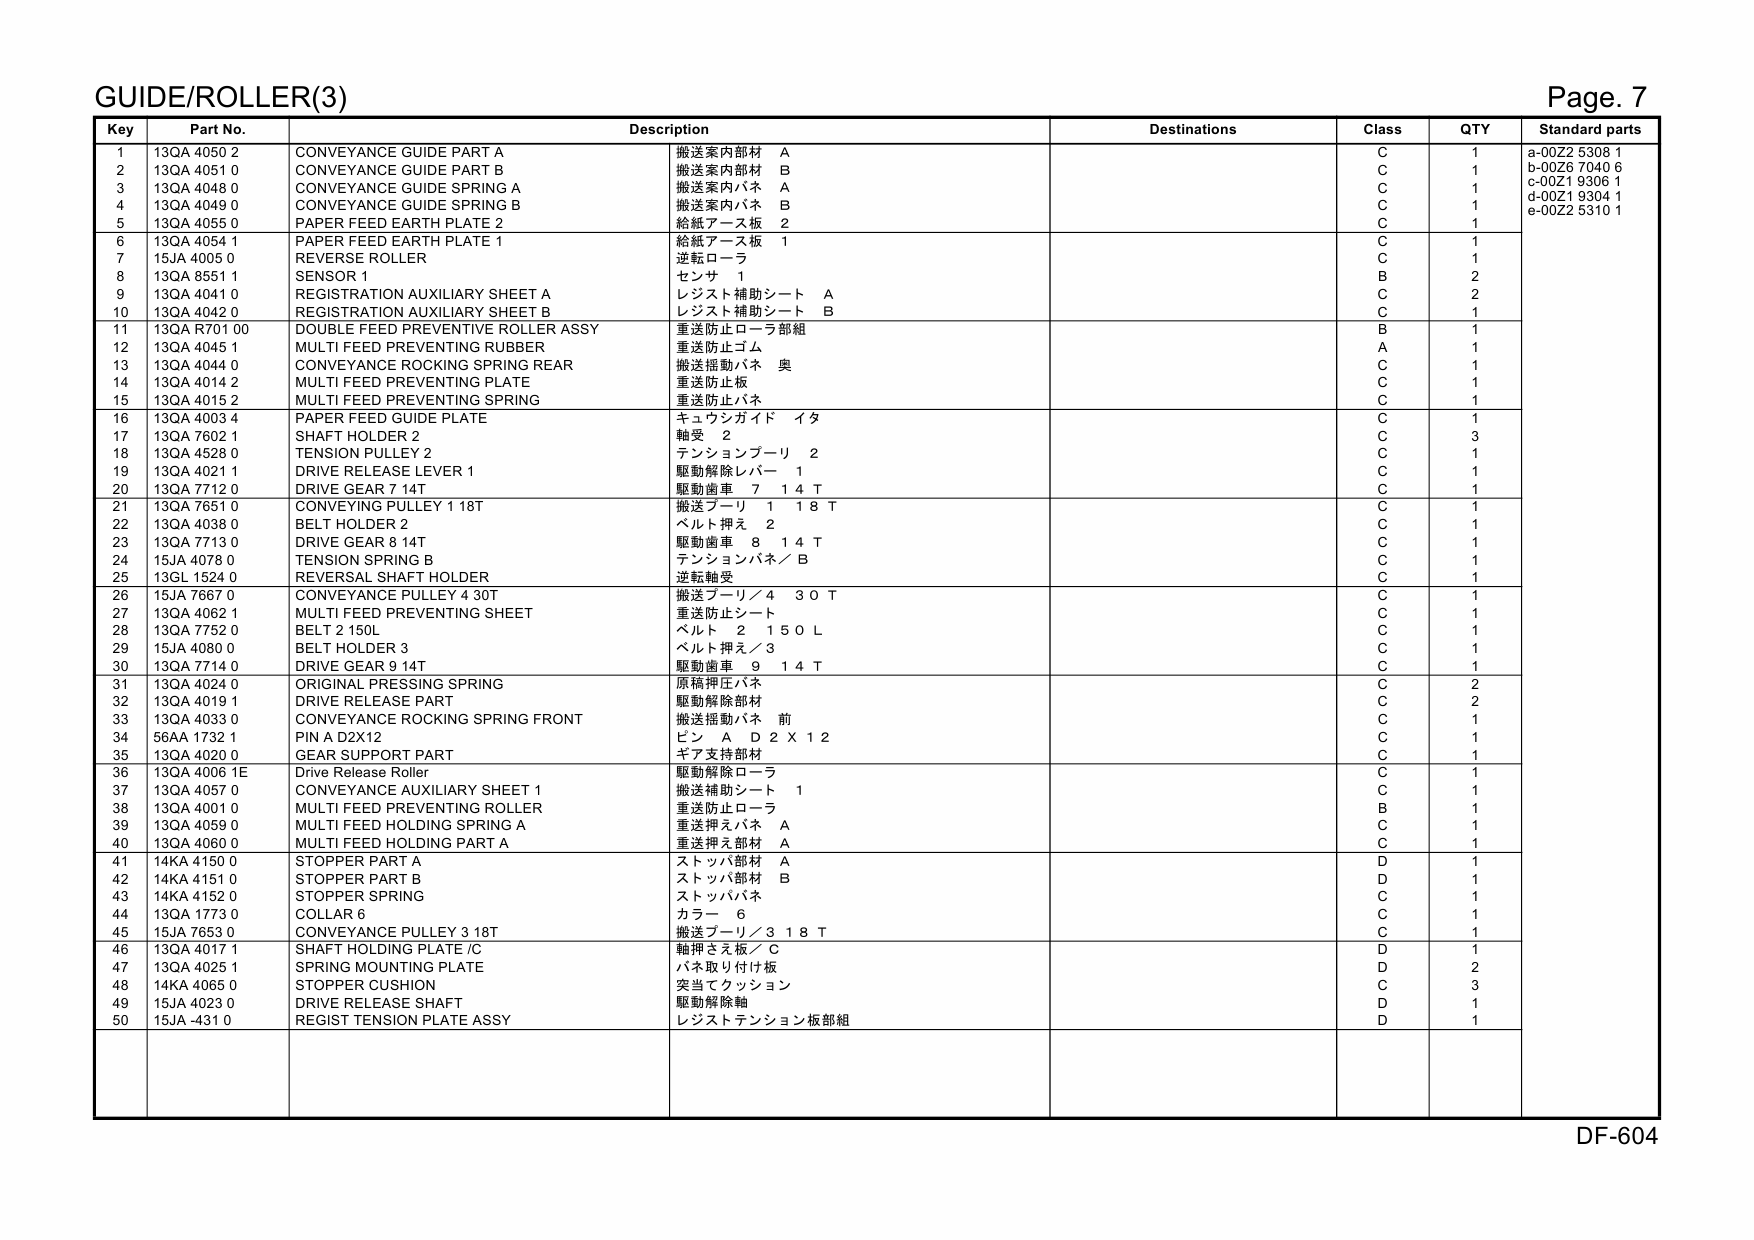 Konica-Minolta Options DF-604 15JA Parts Manual-6